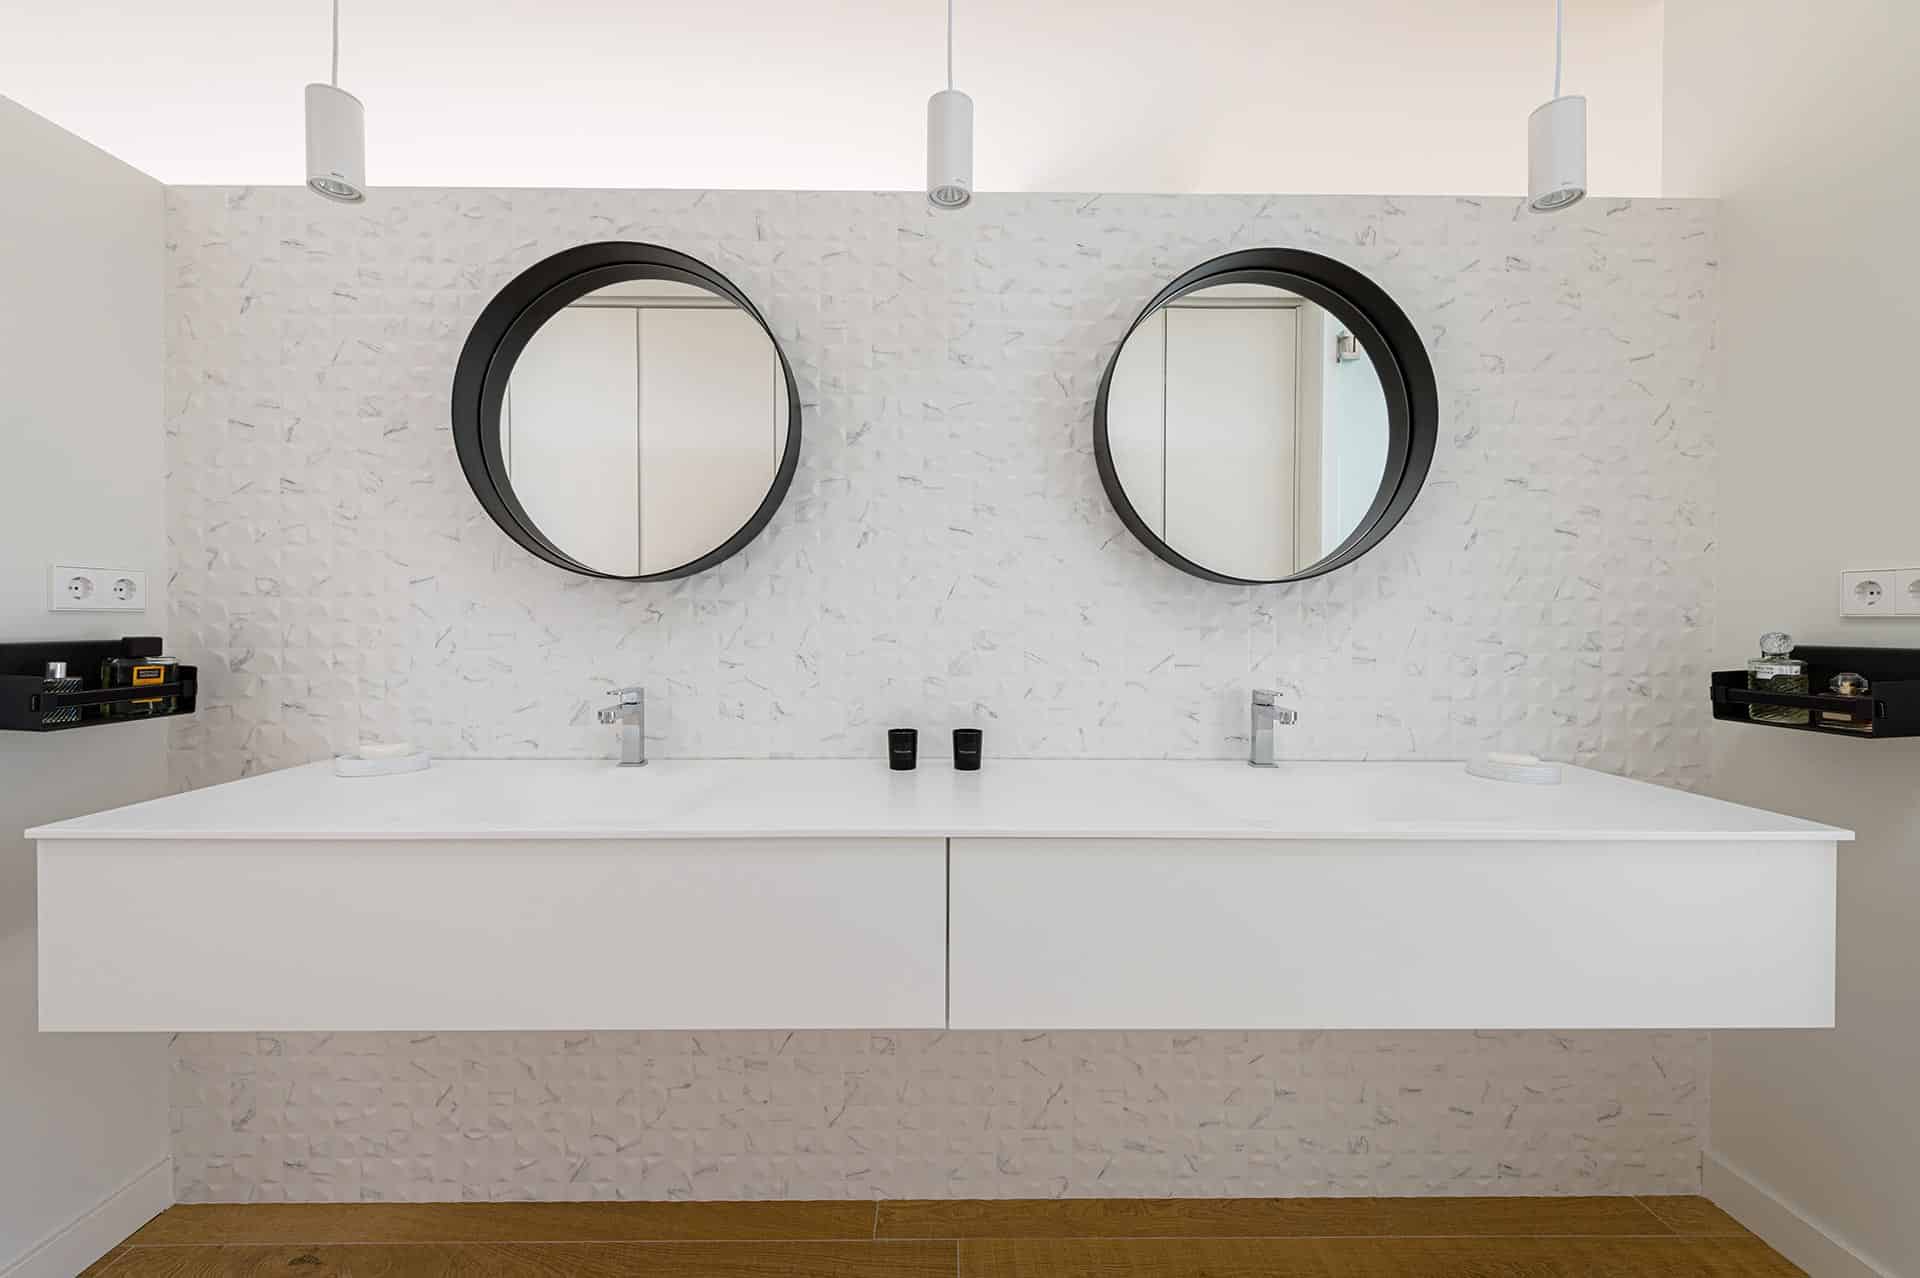 Baño de diseño con madera y gres porcelánico blanco diseñado por Moah Arquitectos en Cantabria